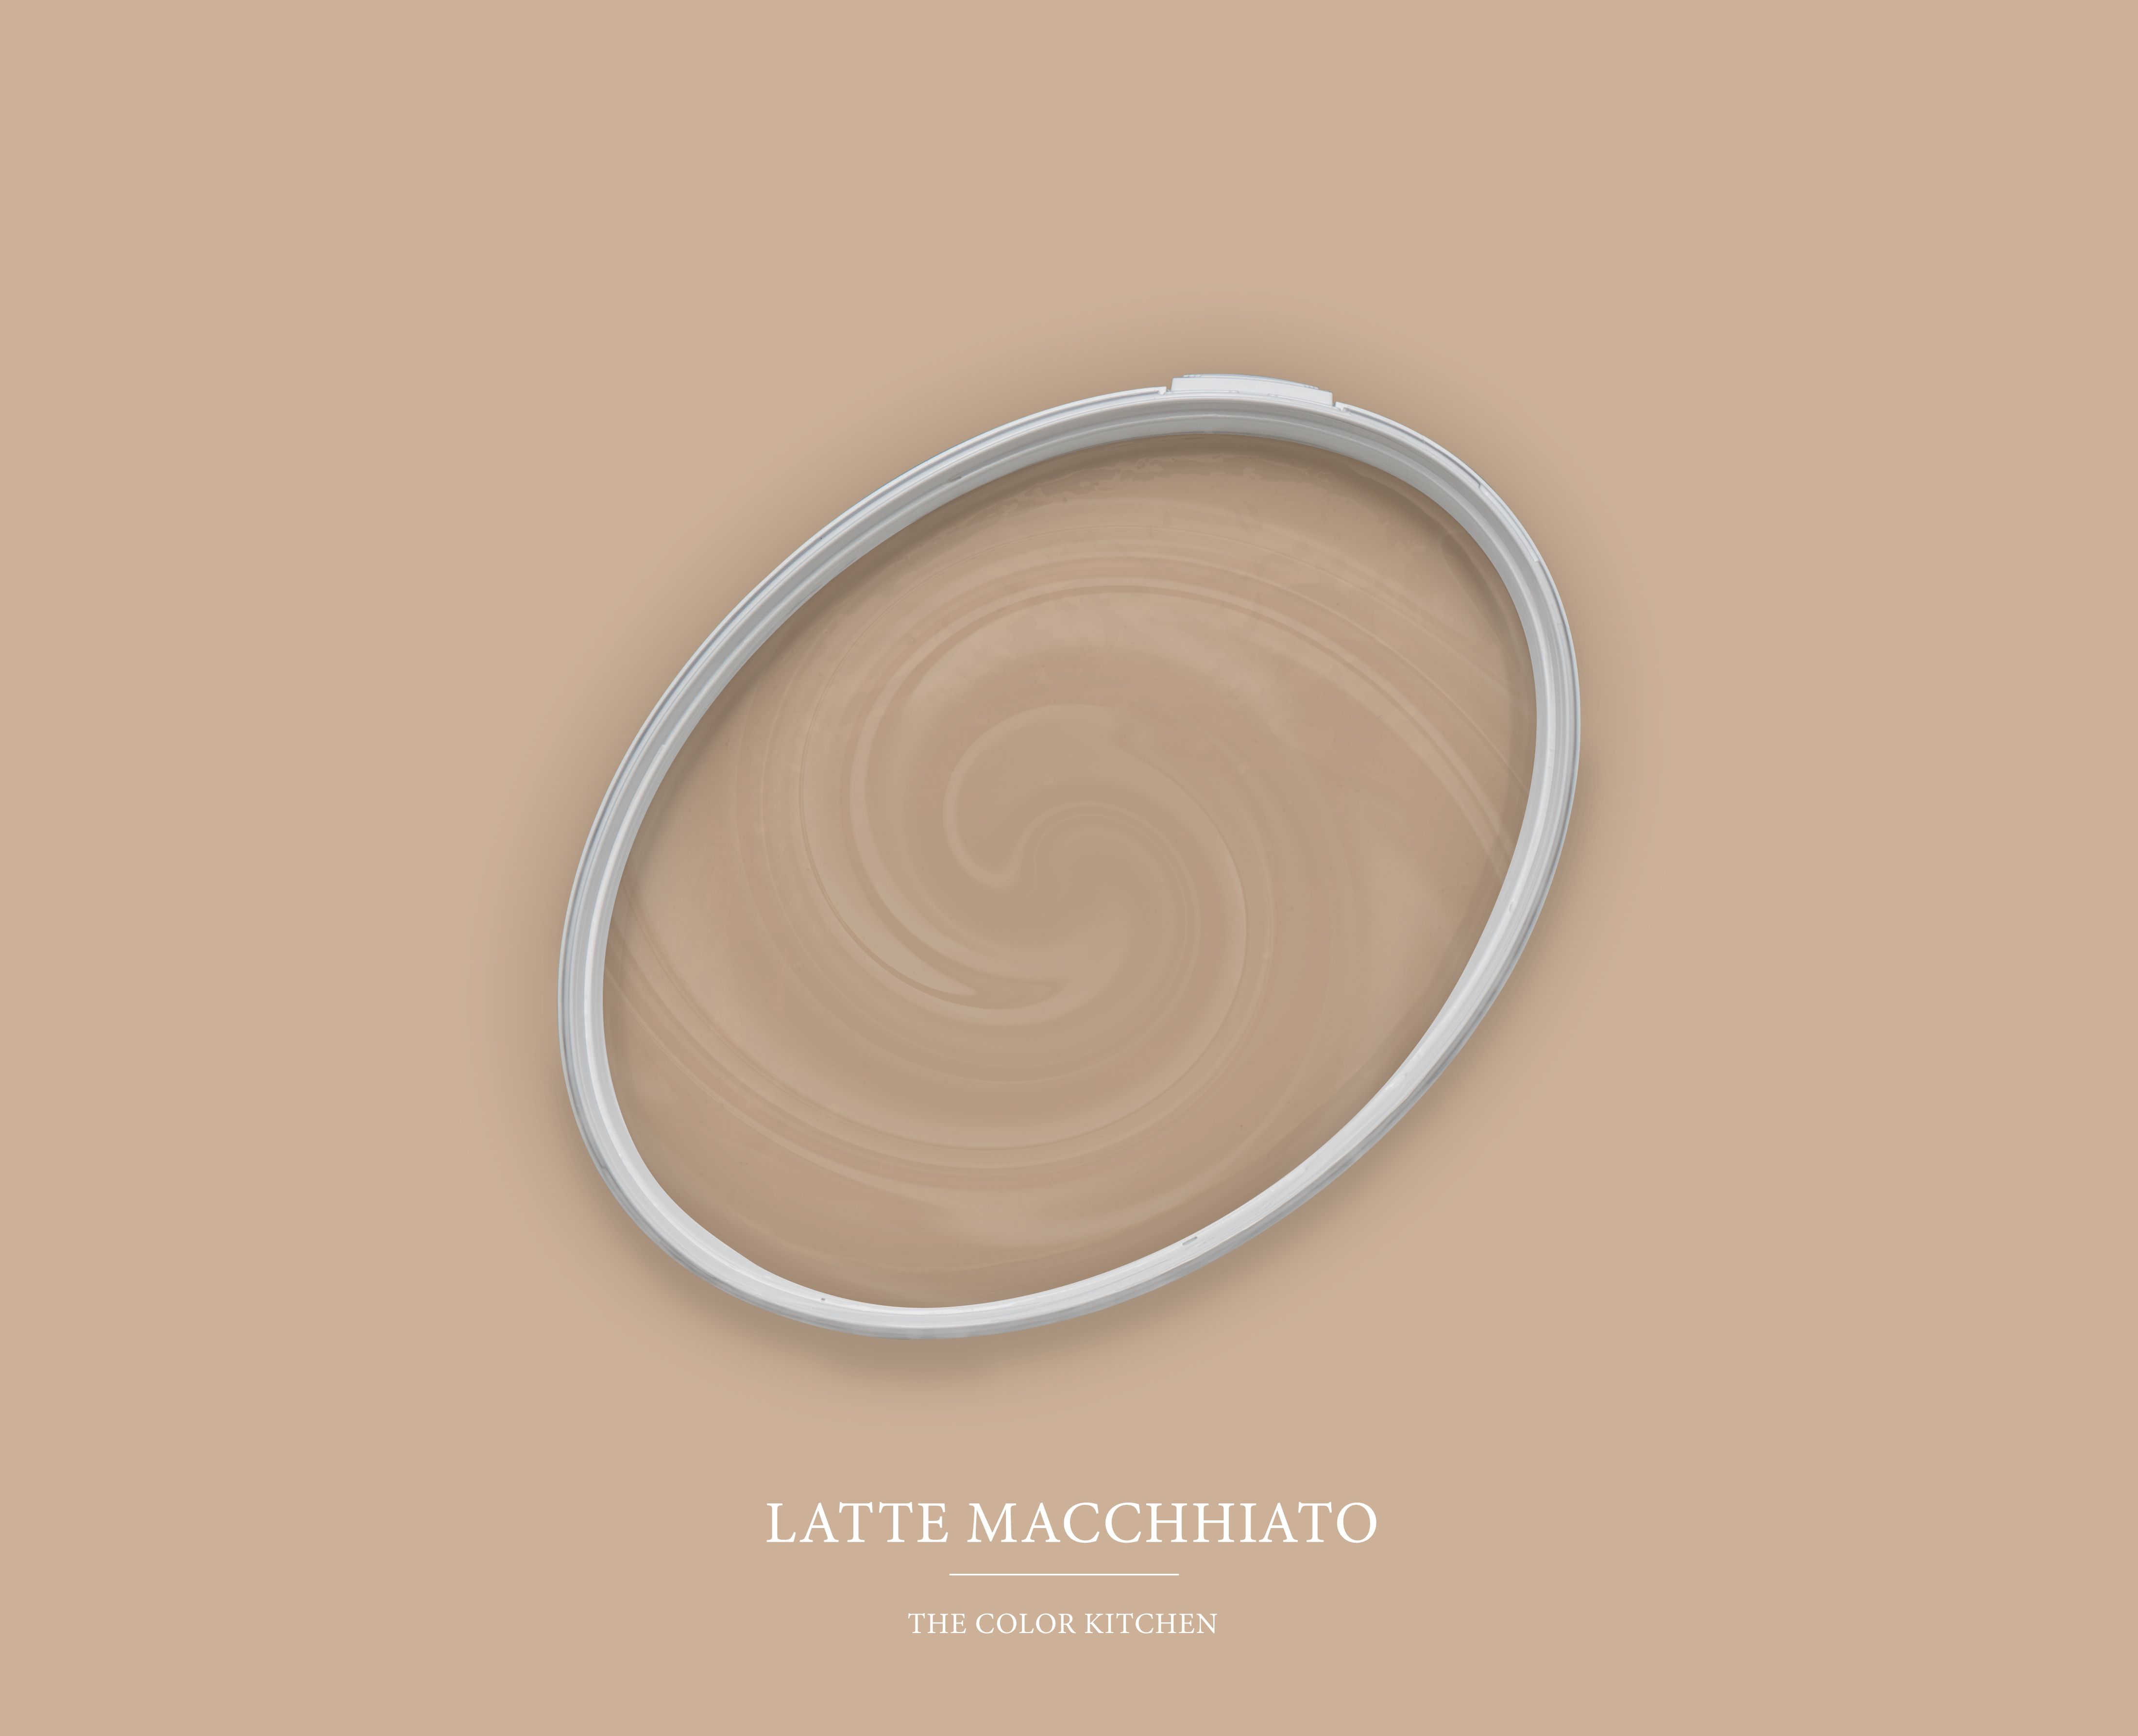 The Color Kitchen Latte Macchhiato 2,5 l